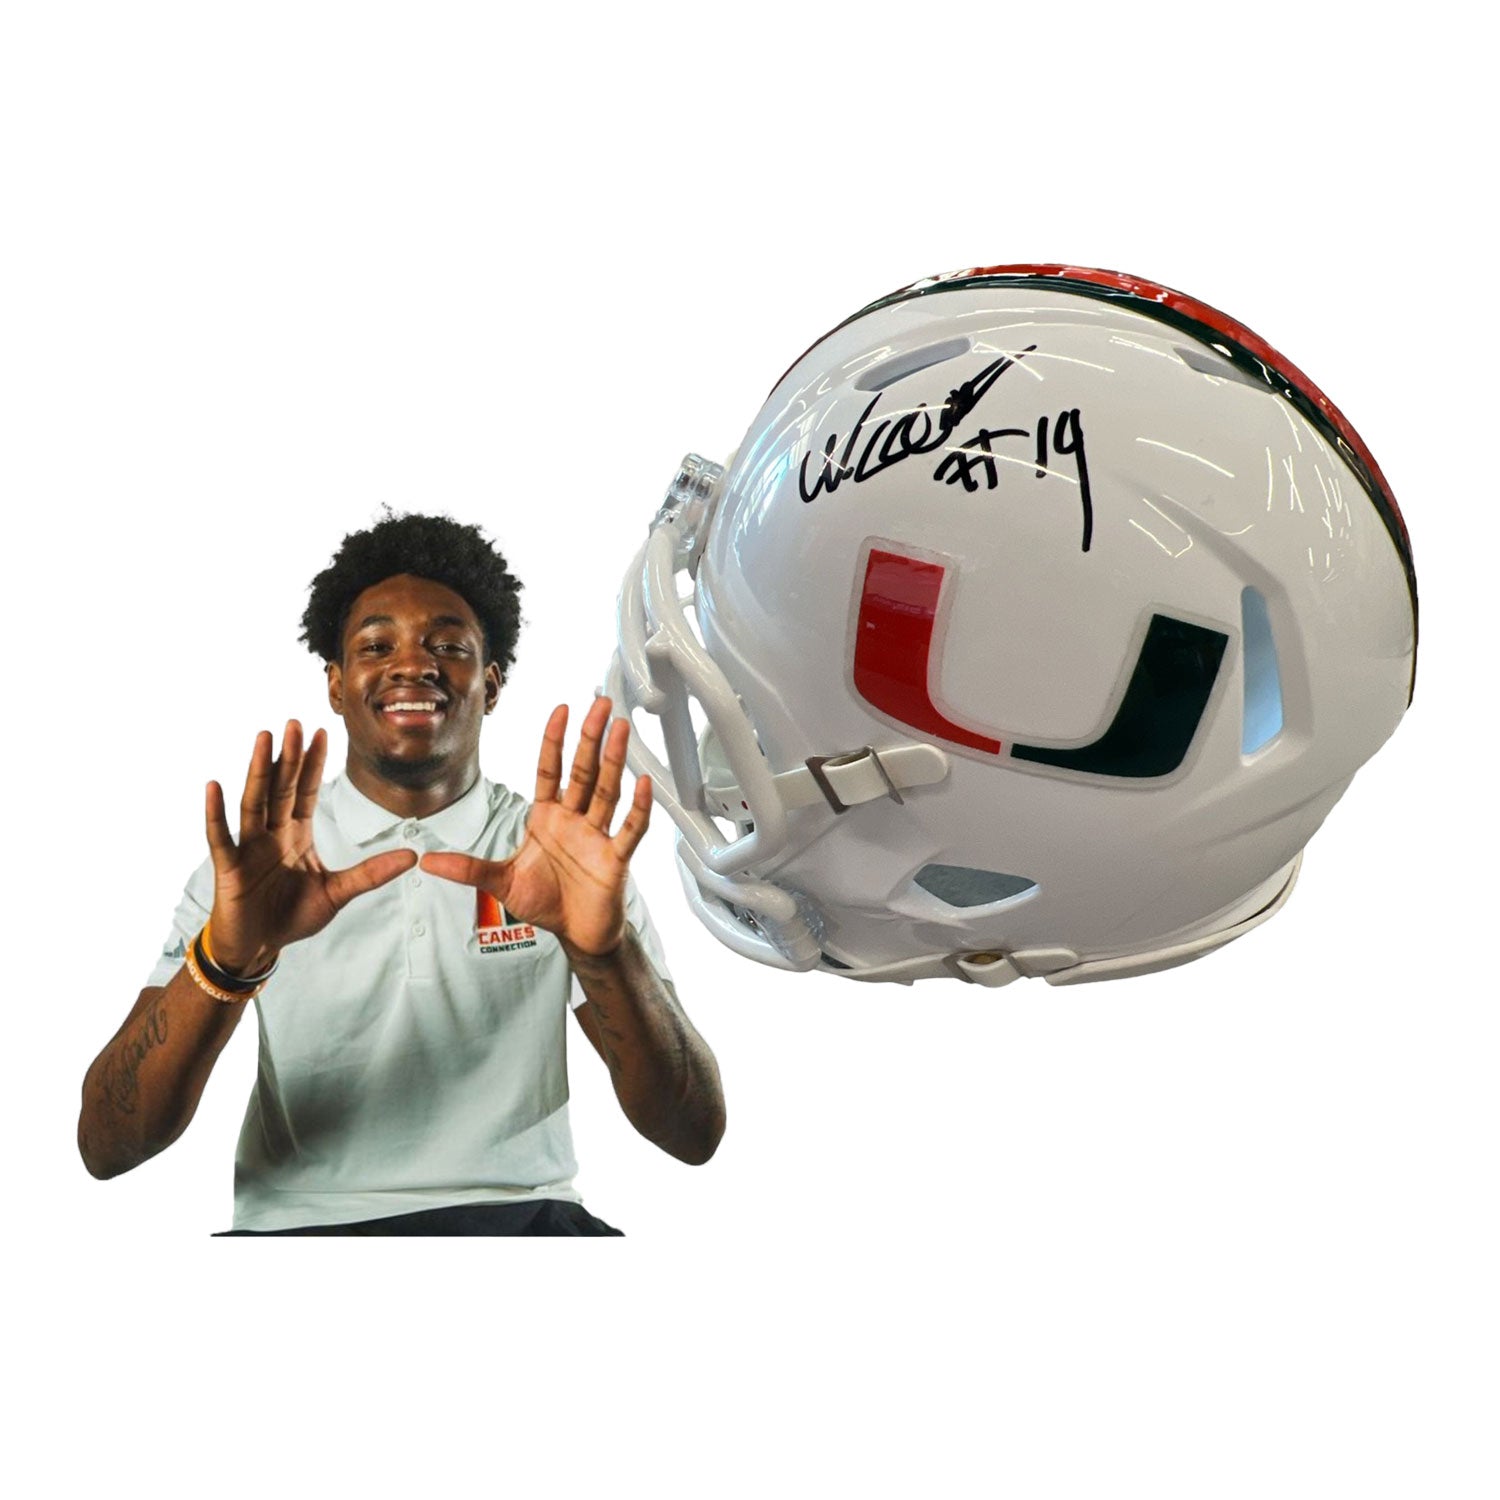 Miami Hurricanes Student Athlete #19 Ny Carr Mini Football Helmet - Main View